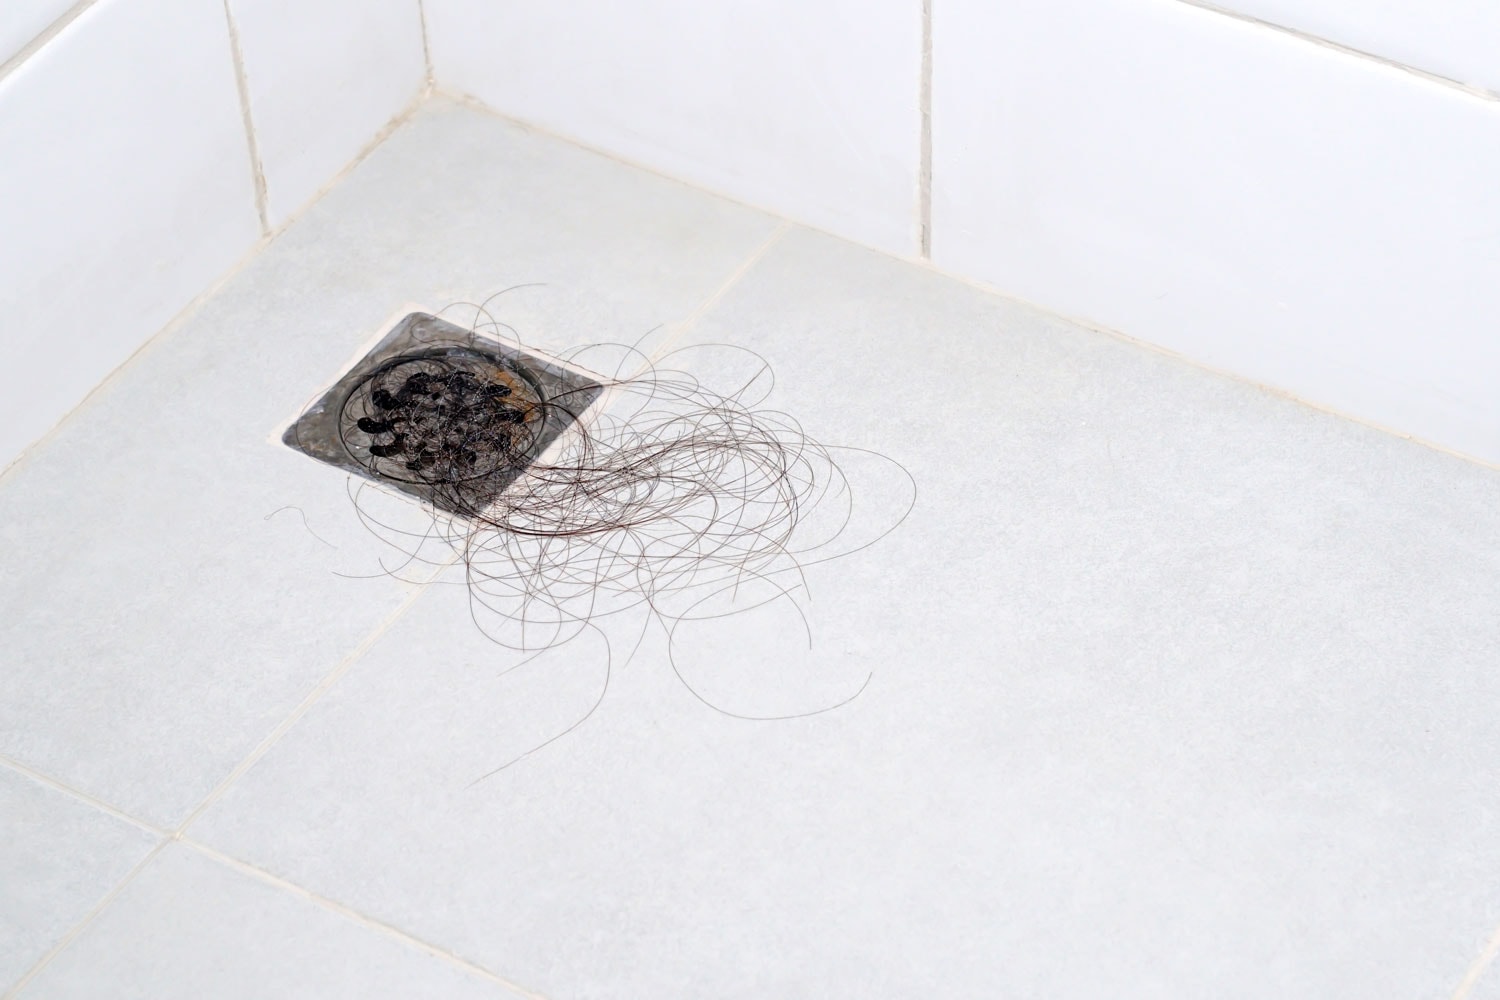 A clogged drain due to hair